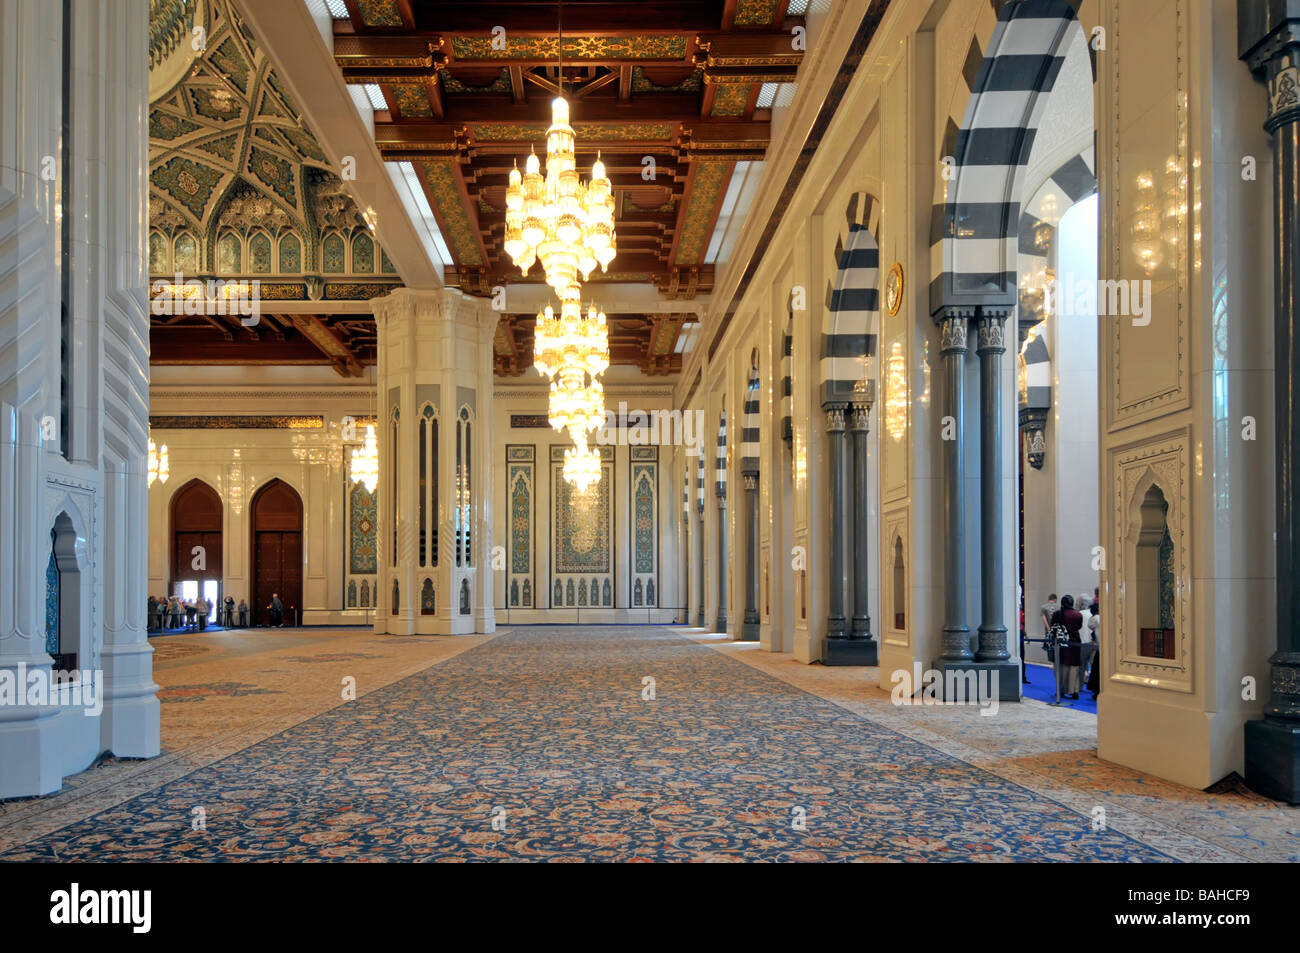 Muscat-Oman-Moschee innen mit Teppich ausgelegten Gebetsraum mit Kronleuchtern und reich verzierte Decke Stockfoto